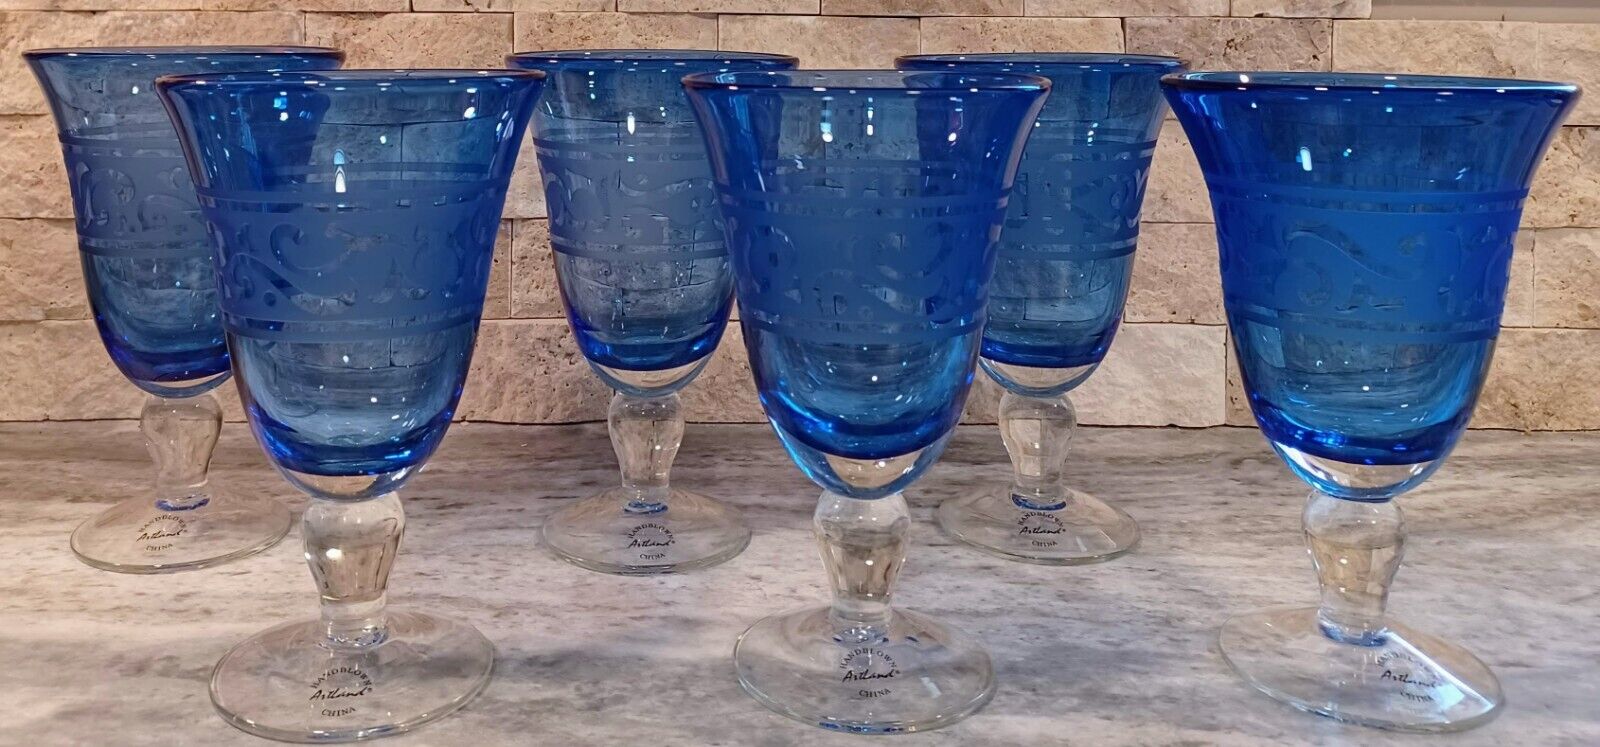 Artland Renaissance Cobalt Blue / Slate Iced Tea Glass set of 6 RARE